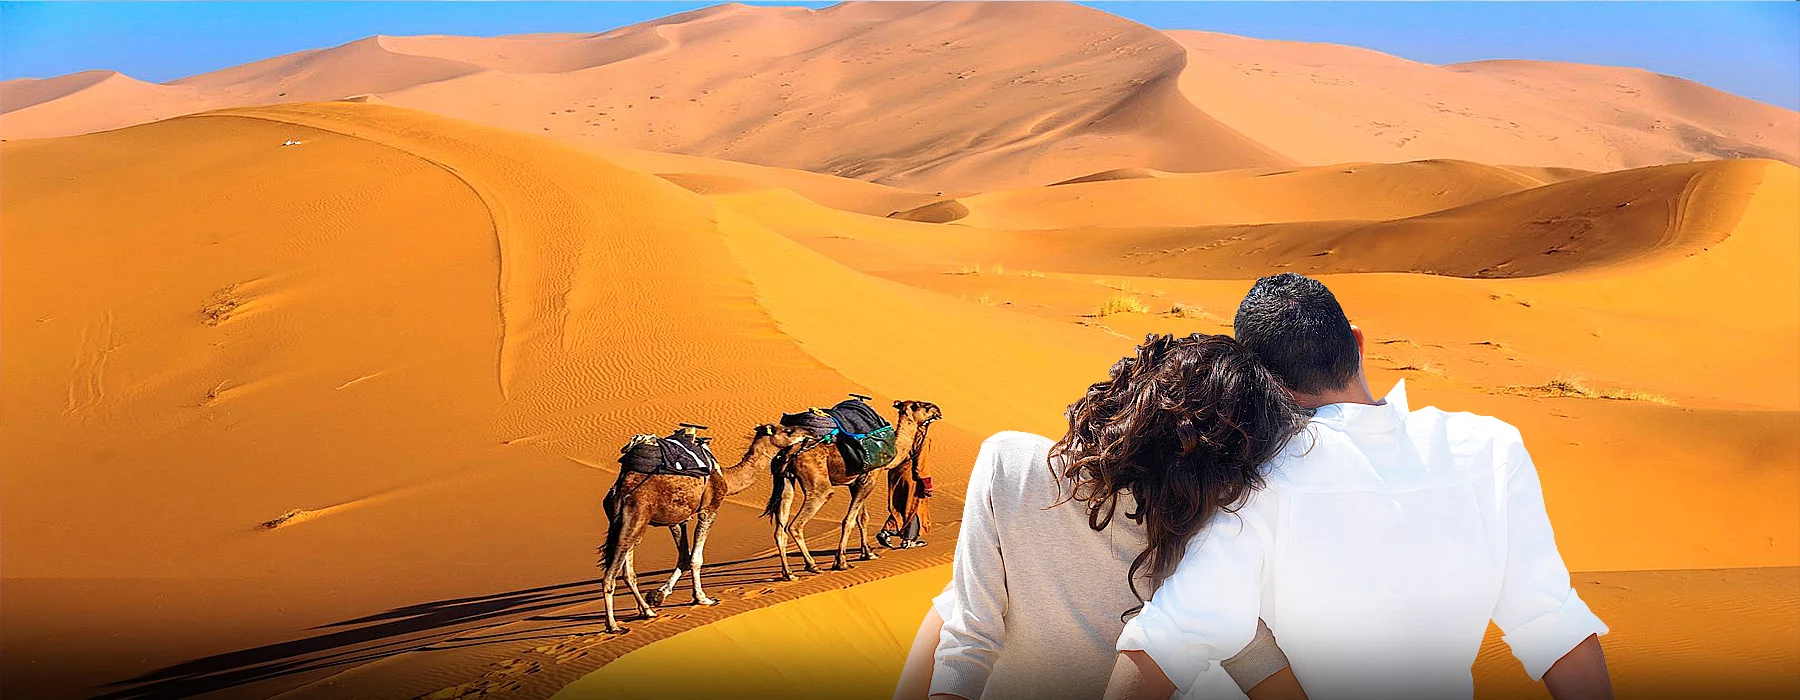 4-Day Desert tour from Marrakech to Merzouga